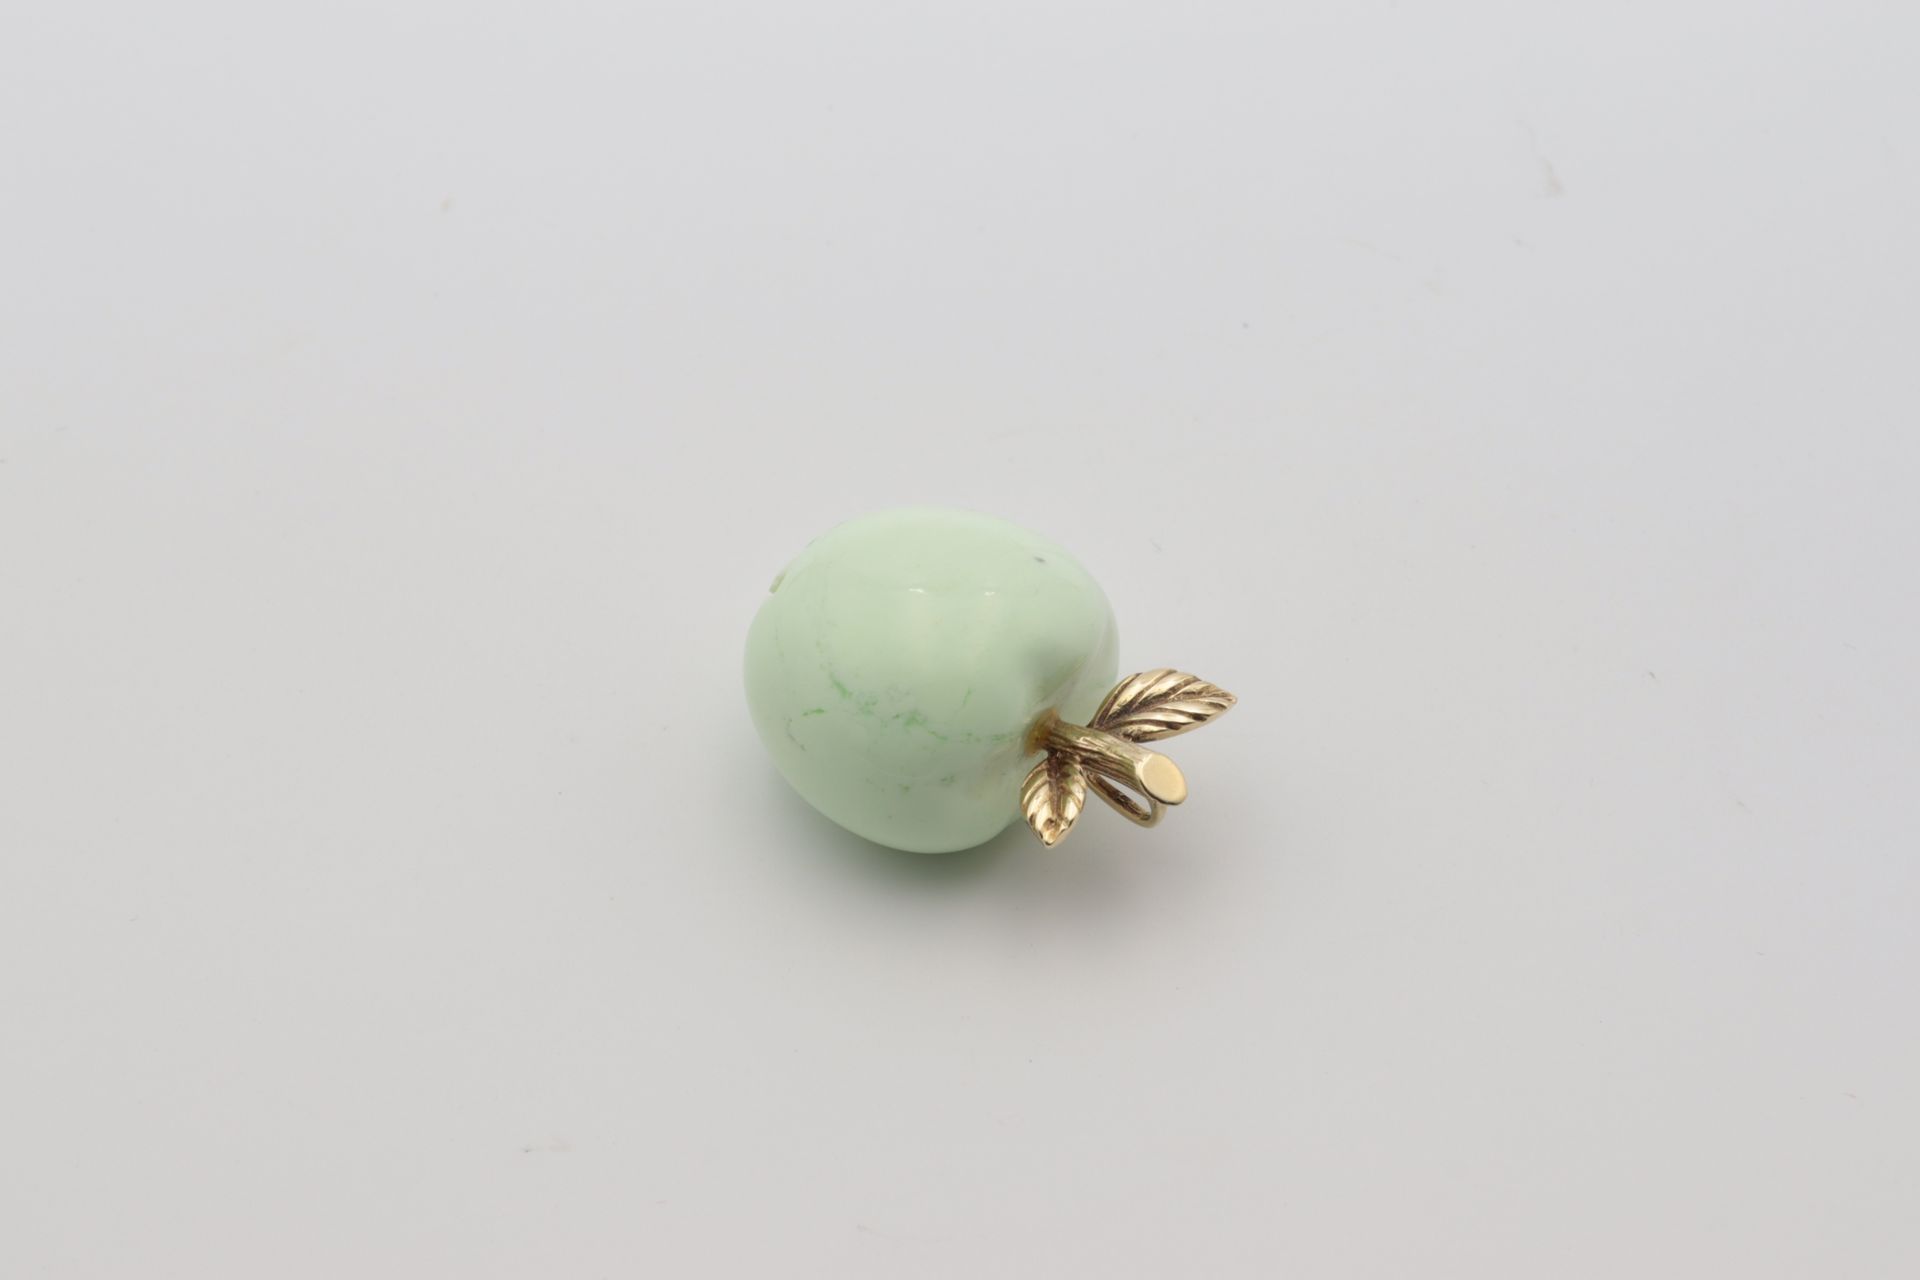 Anhänger - Jaspis fein ausgearbeiteter Apfel, aus mintgrünem Jaspis, mit blattförmi - Image 3 of 4